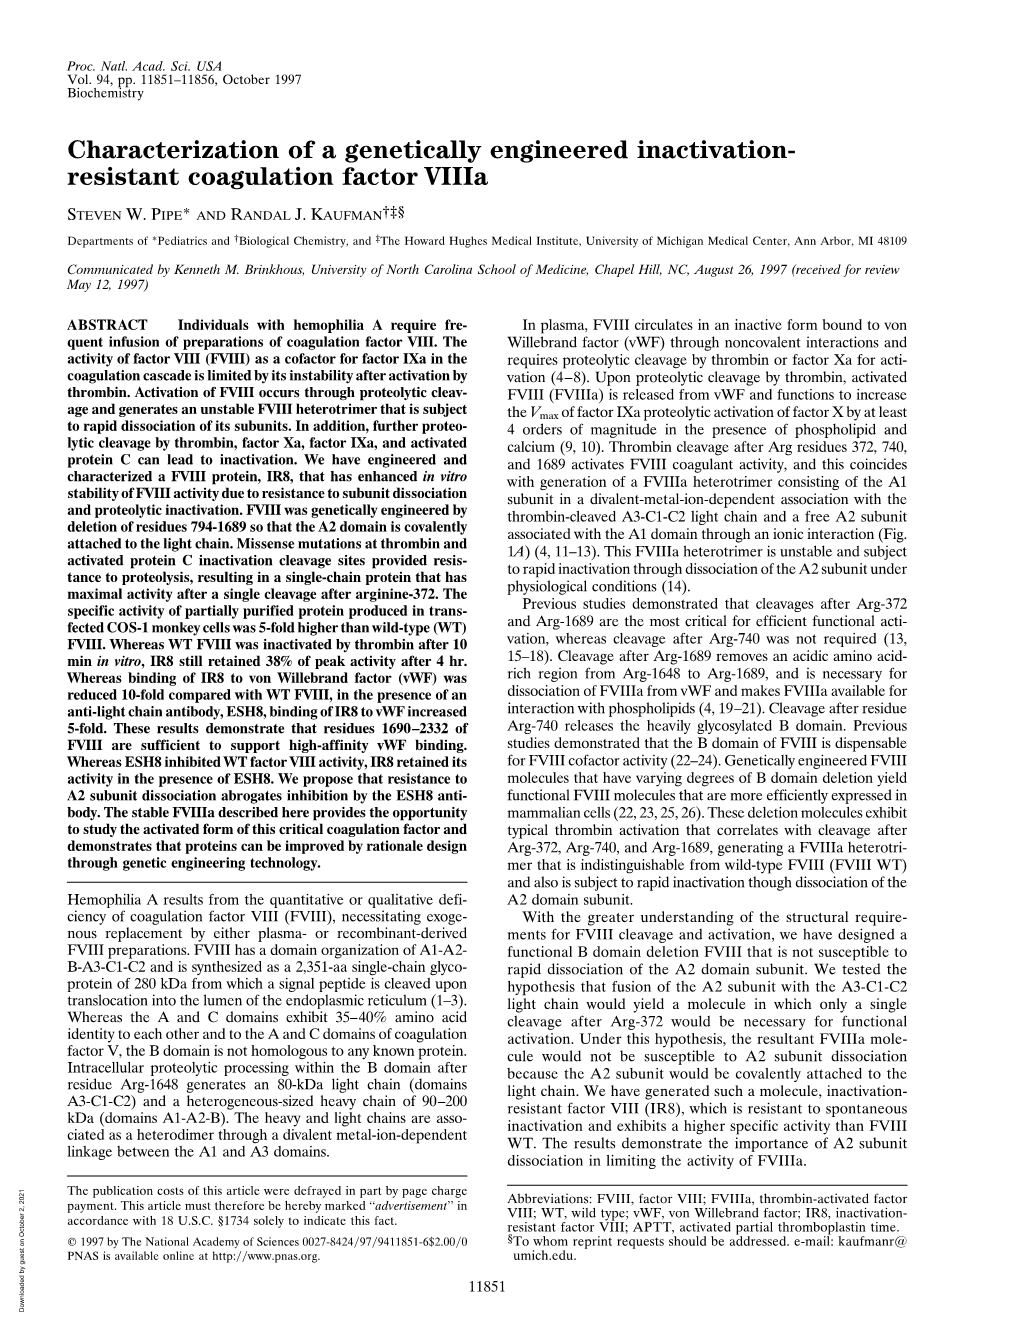 Resistant Coagulation Factor Viiia